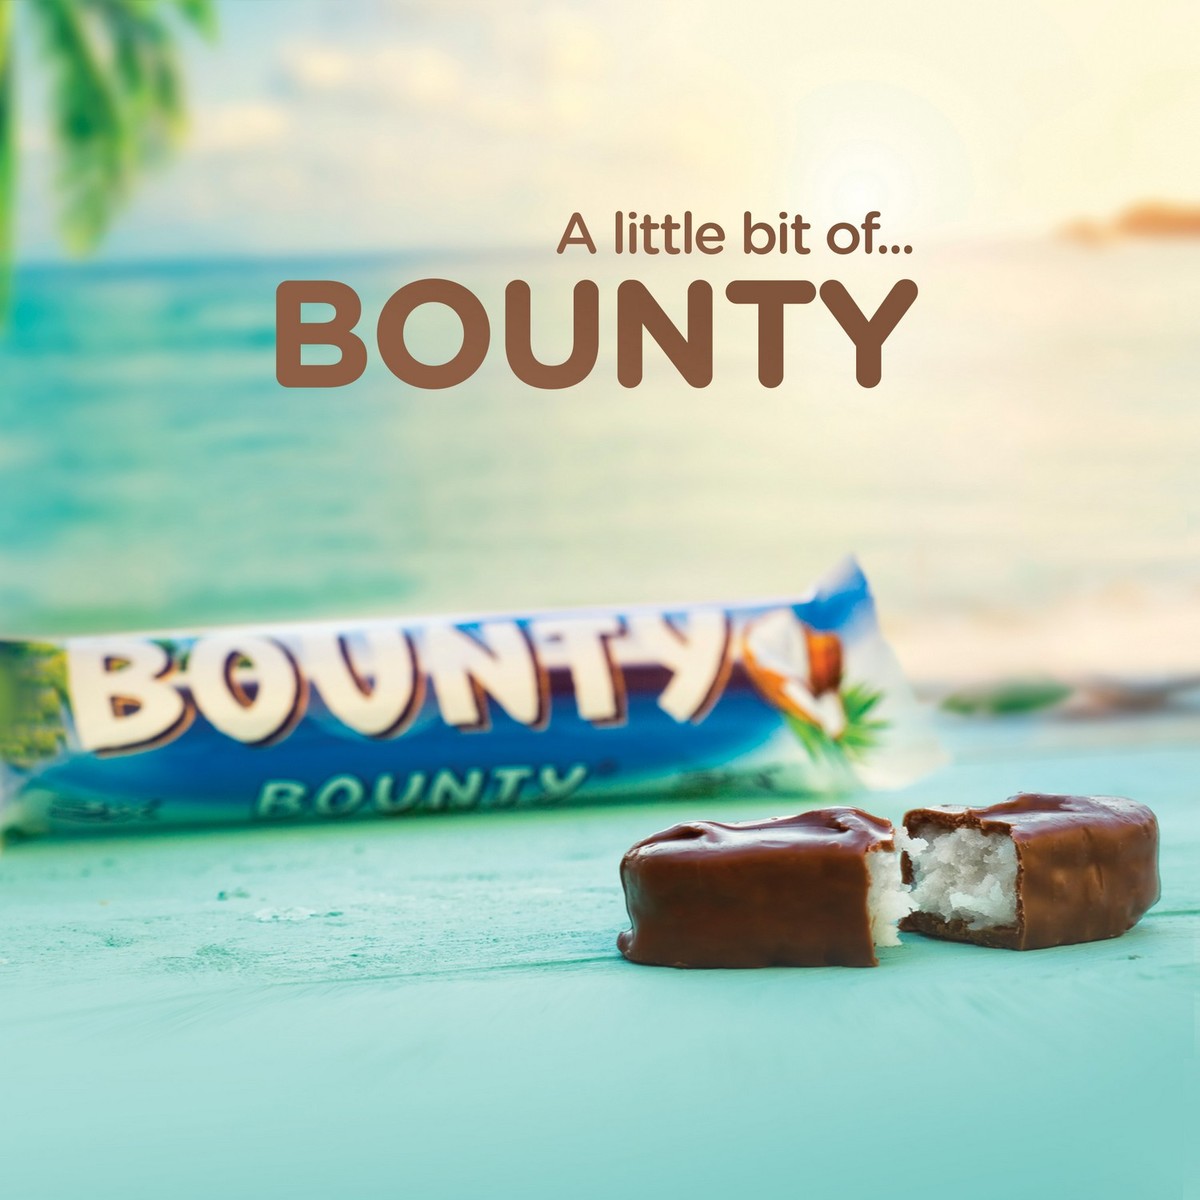 Bounty kid проснулся. Шоколадка Баунти дзен. Реклама Баунти. Реклама шоколада Баунти. Баунти рисунок.